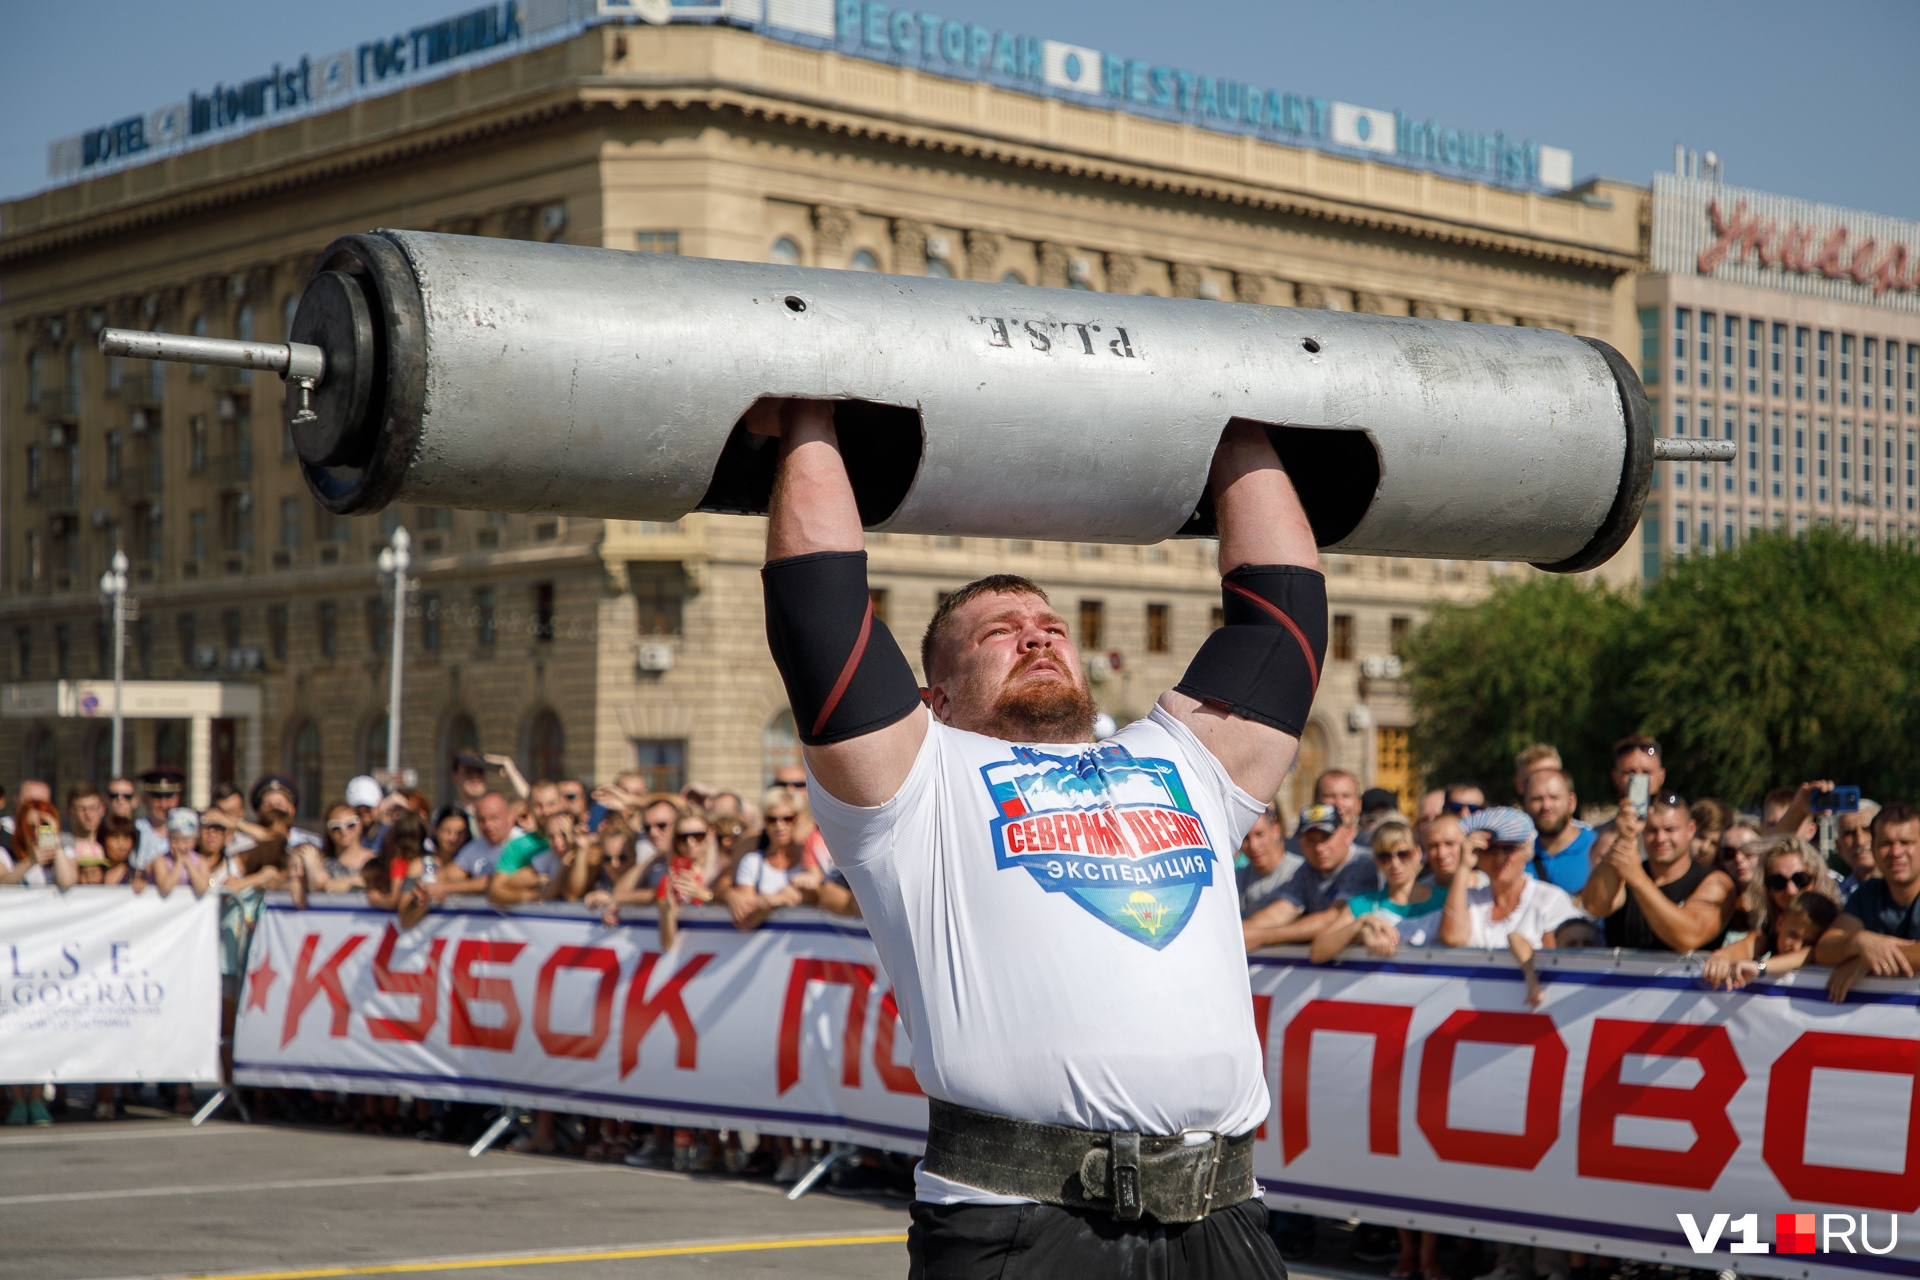 Страна сильна людьми. Самый сильный человек в России. Самый чильный человек в Росси. Самый сильный человек в мире в России. Самый сильный человек России 2012.